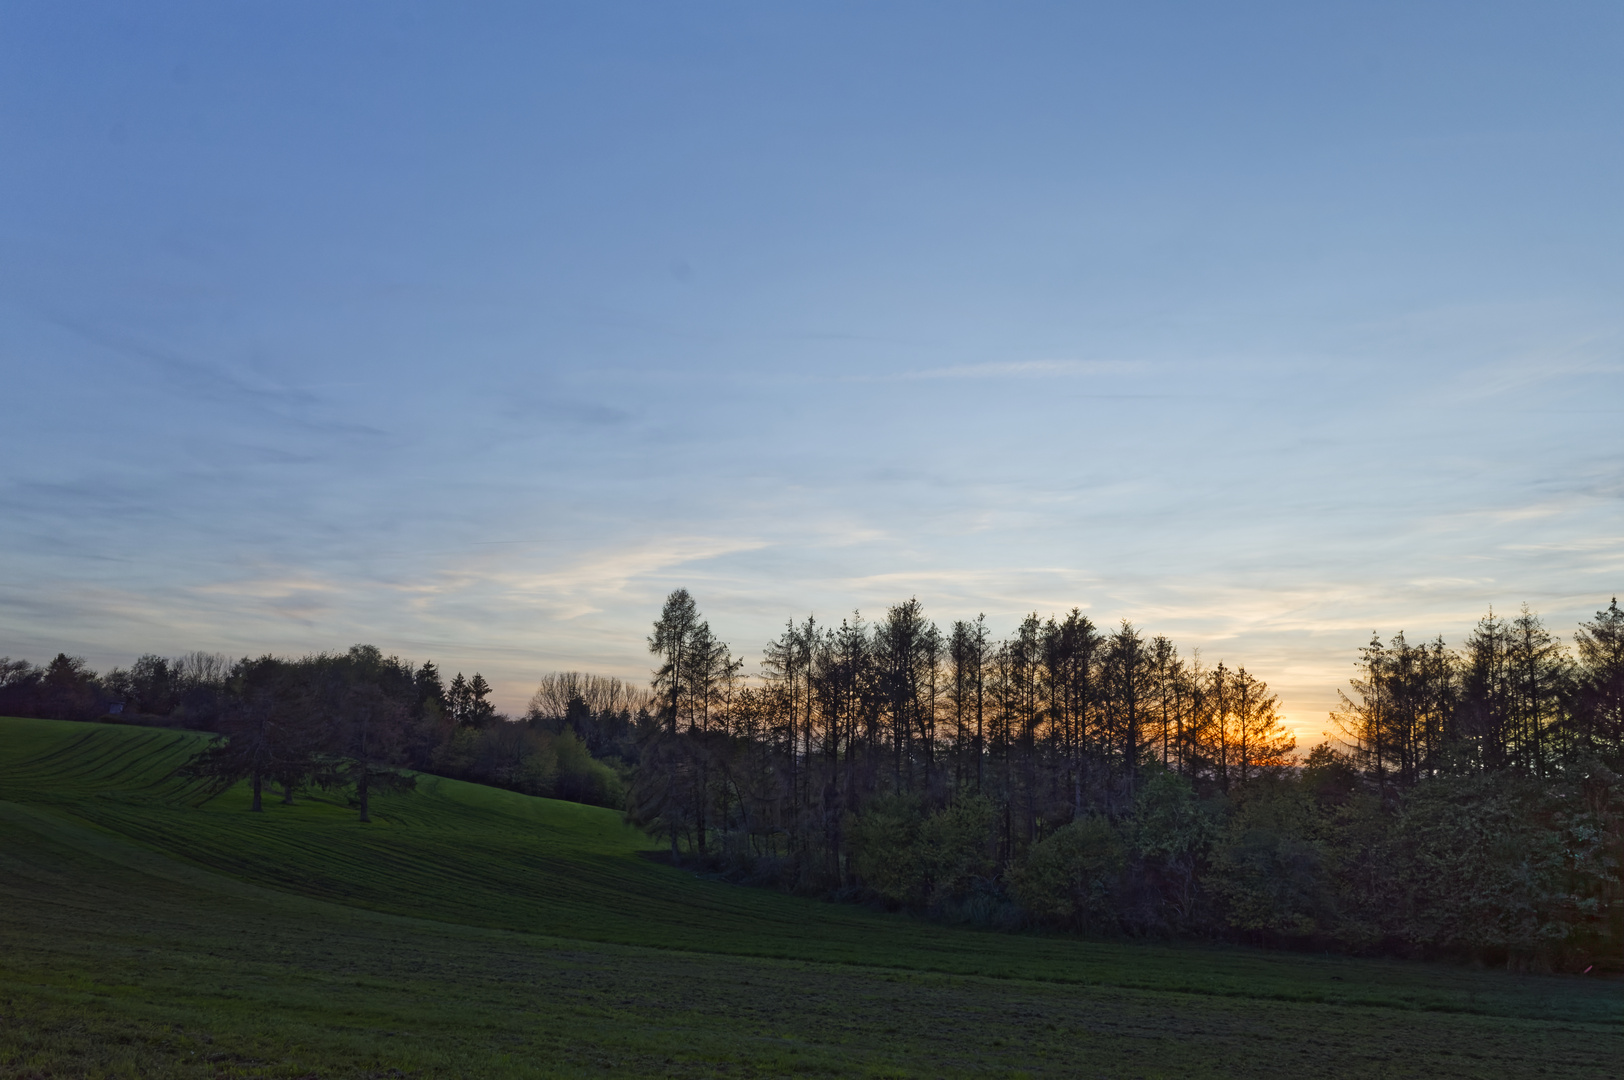 Sonnenuntergang auf dem Hangarder Flur (Saarland)